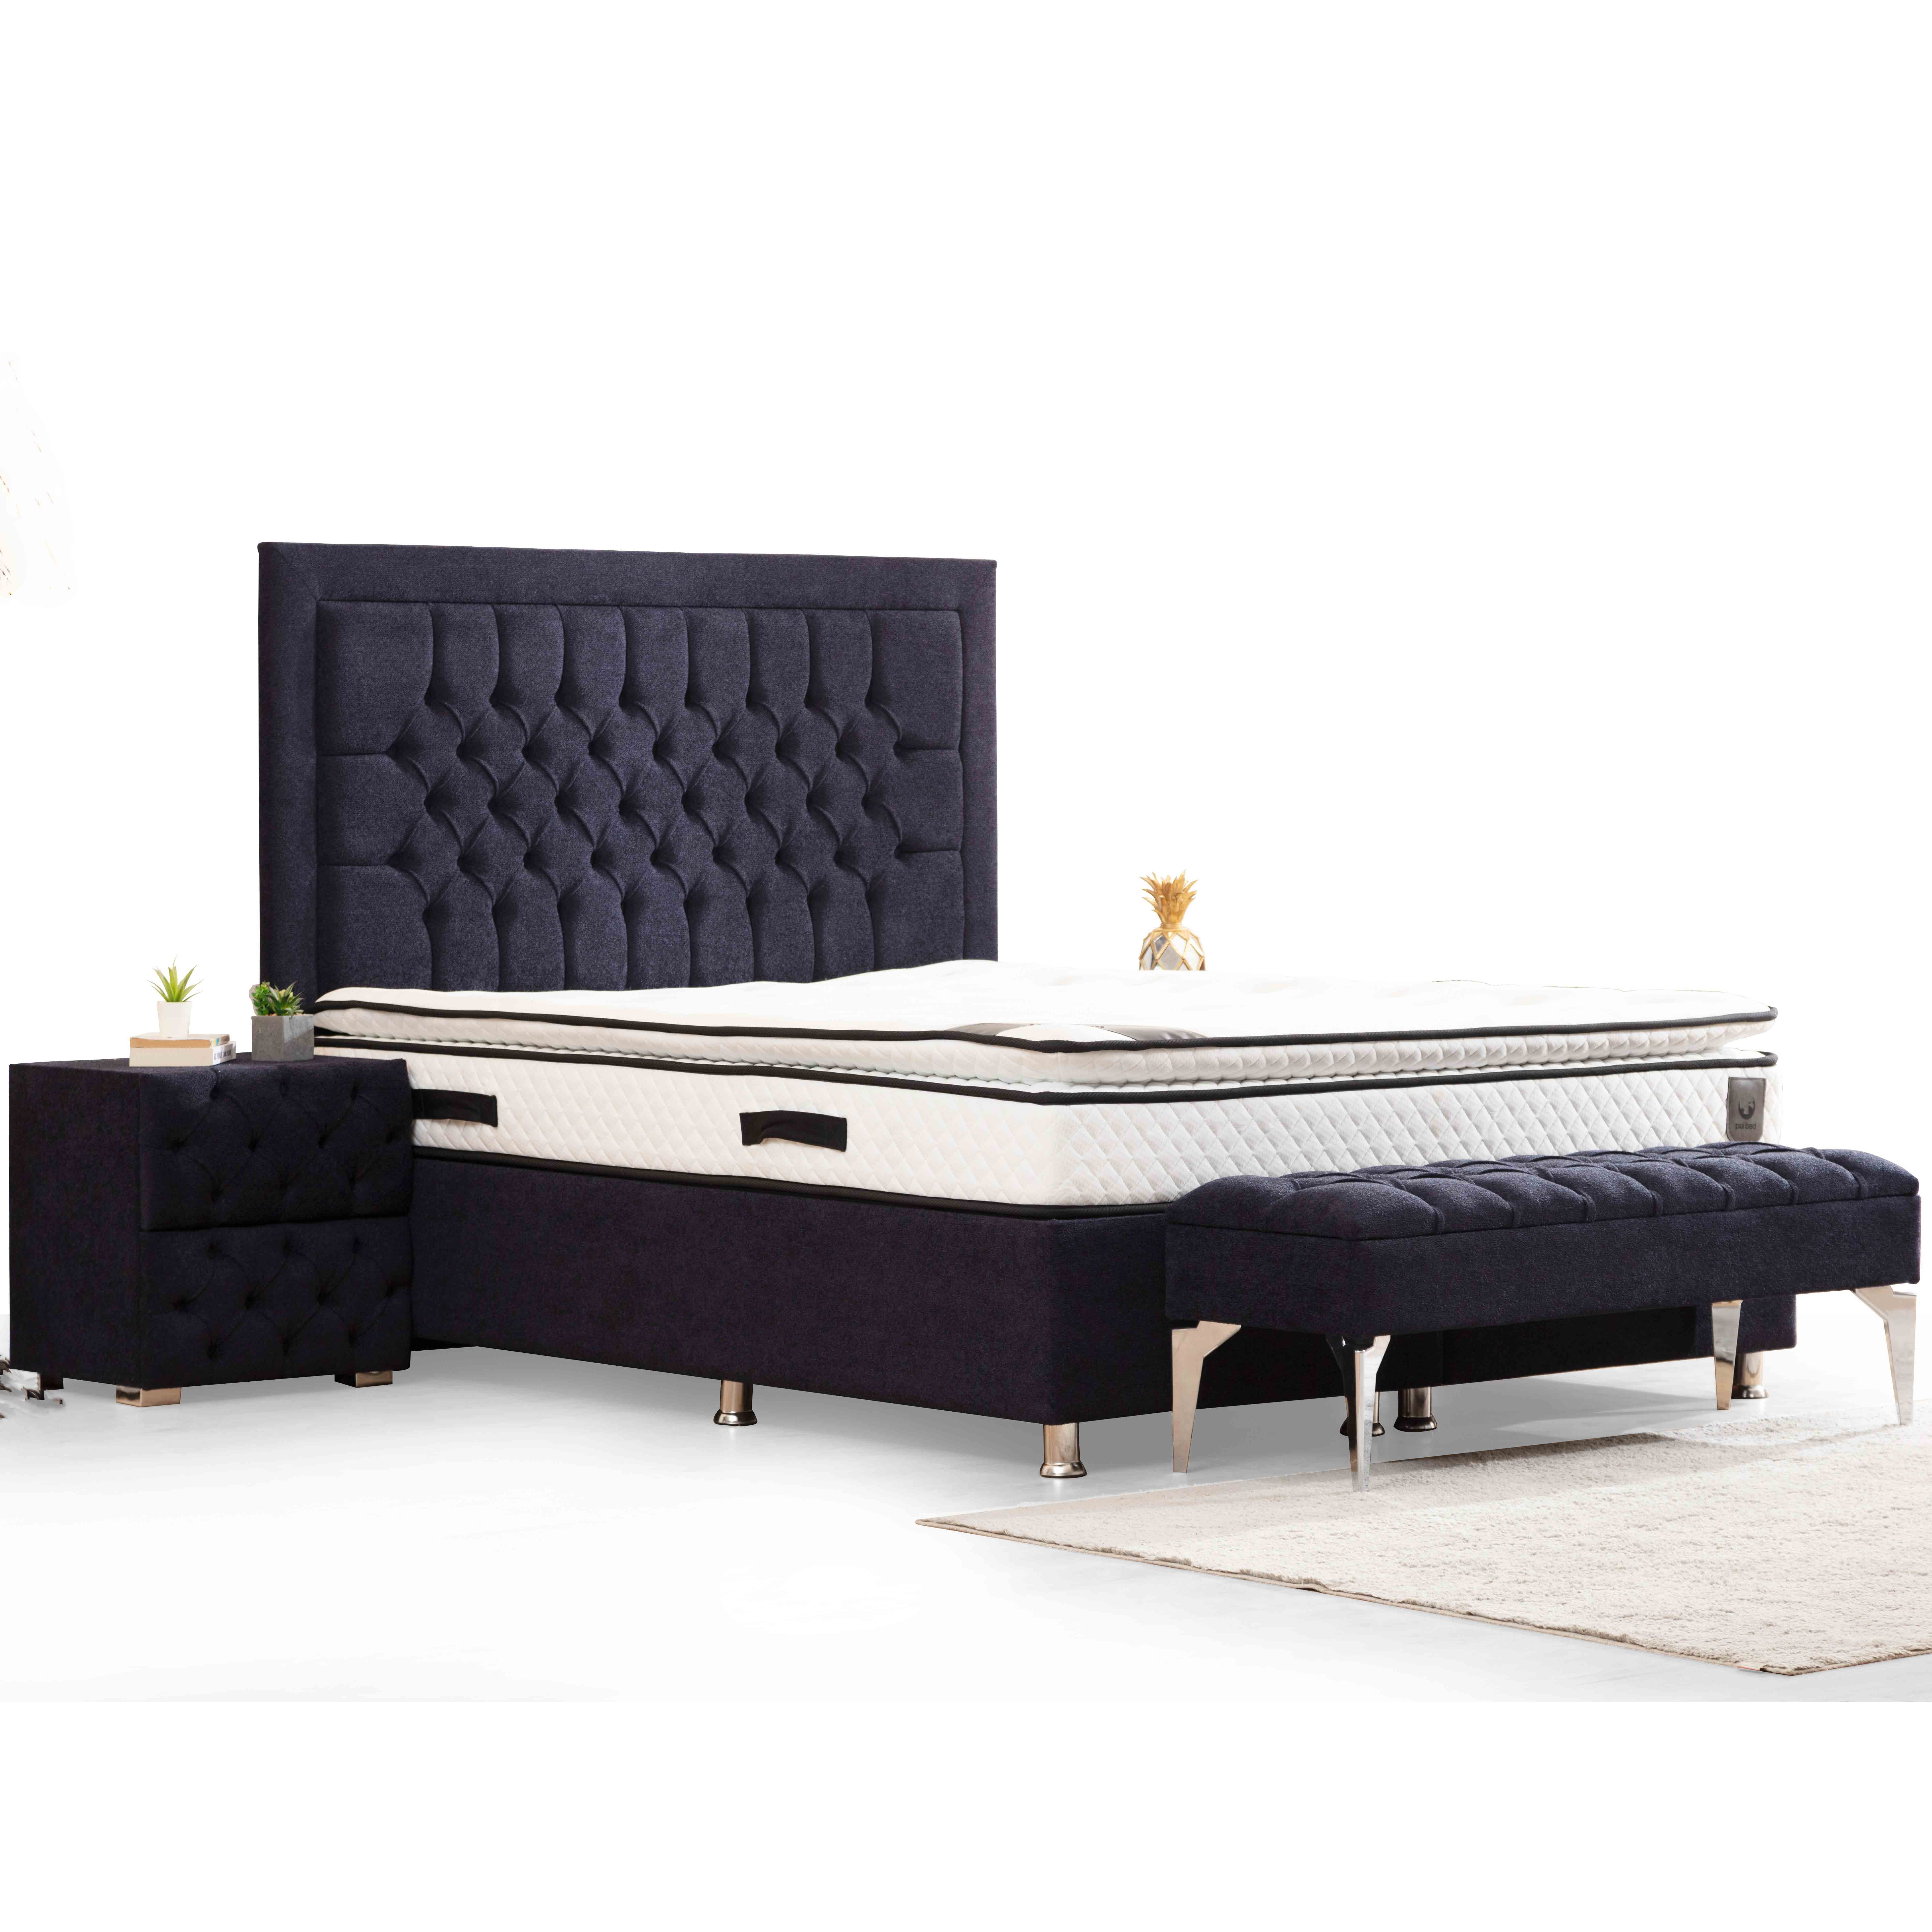 Astom Bed With Storage 180x200 cm